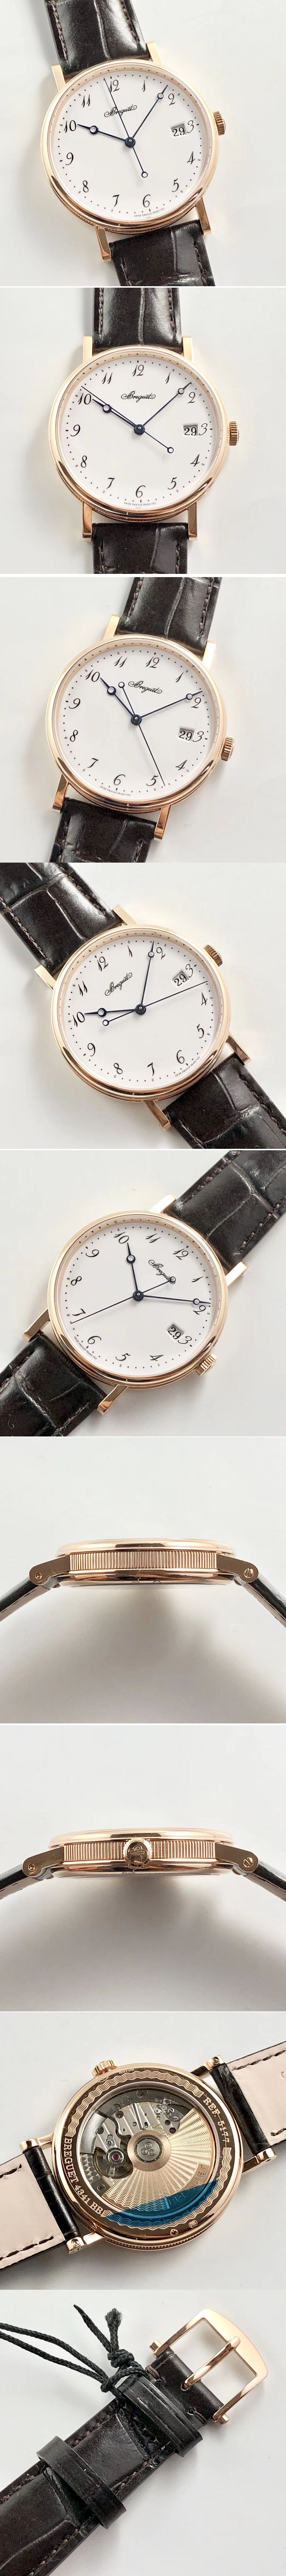 Replica Breguet Watches